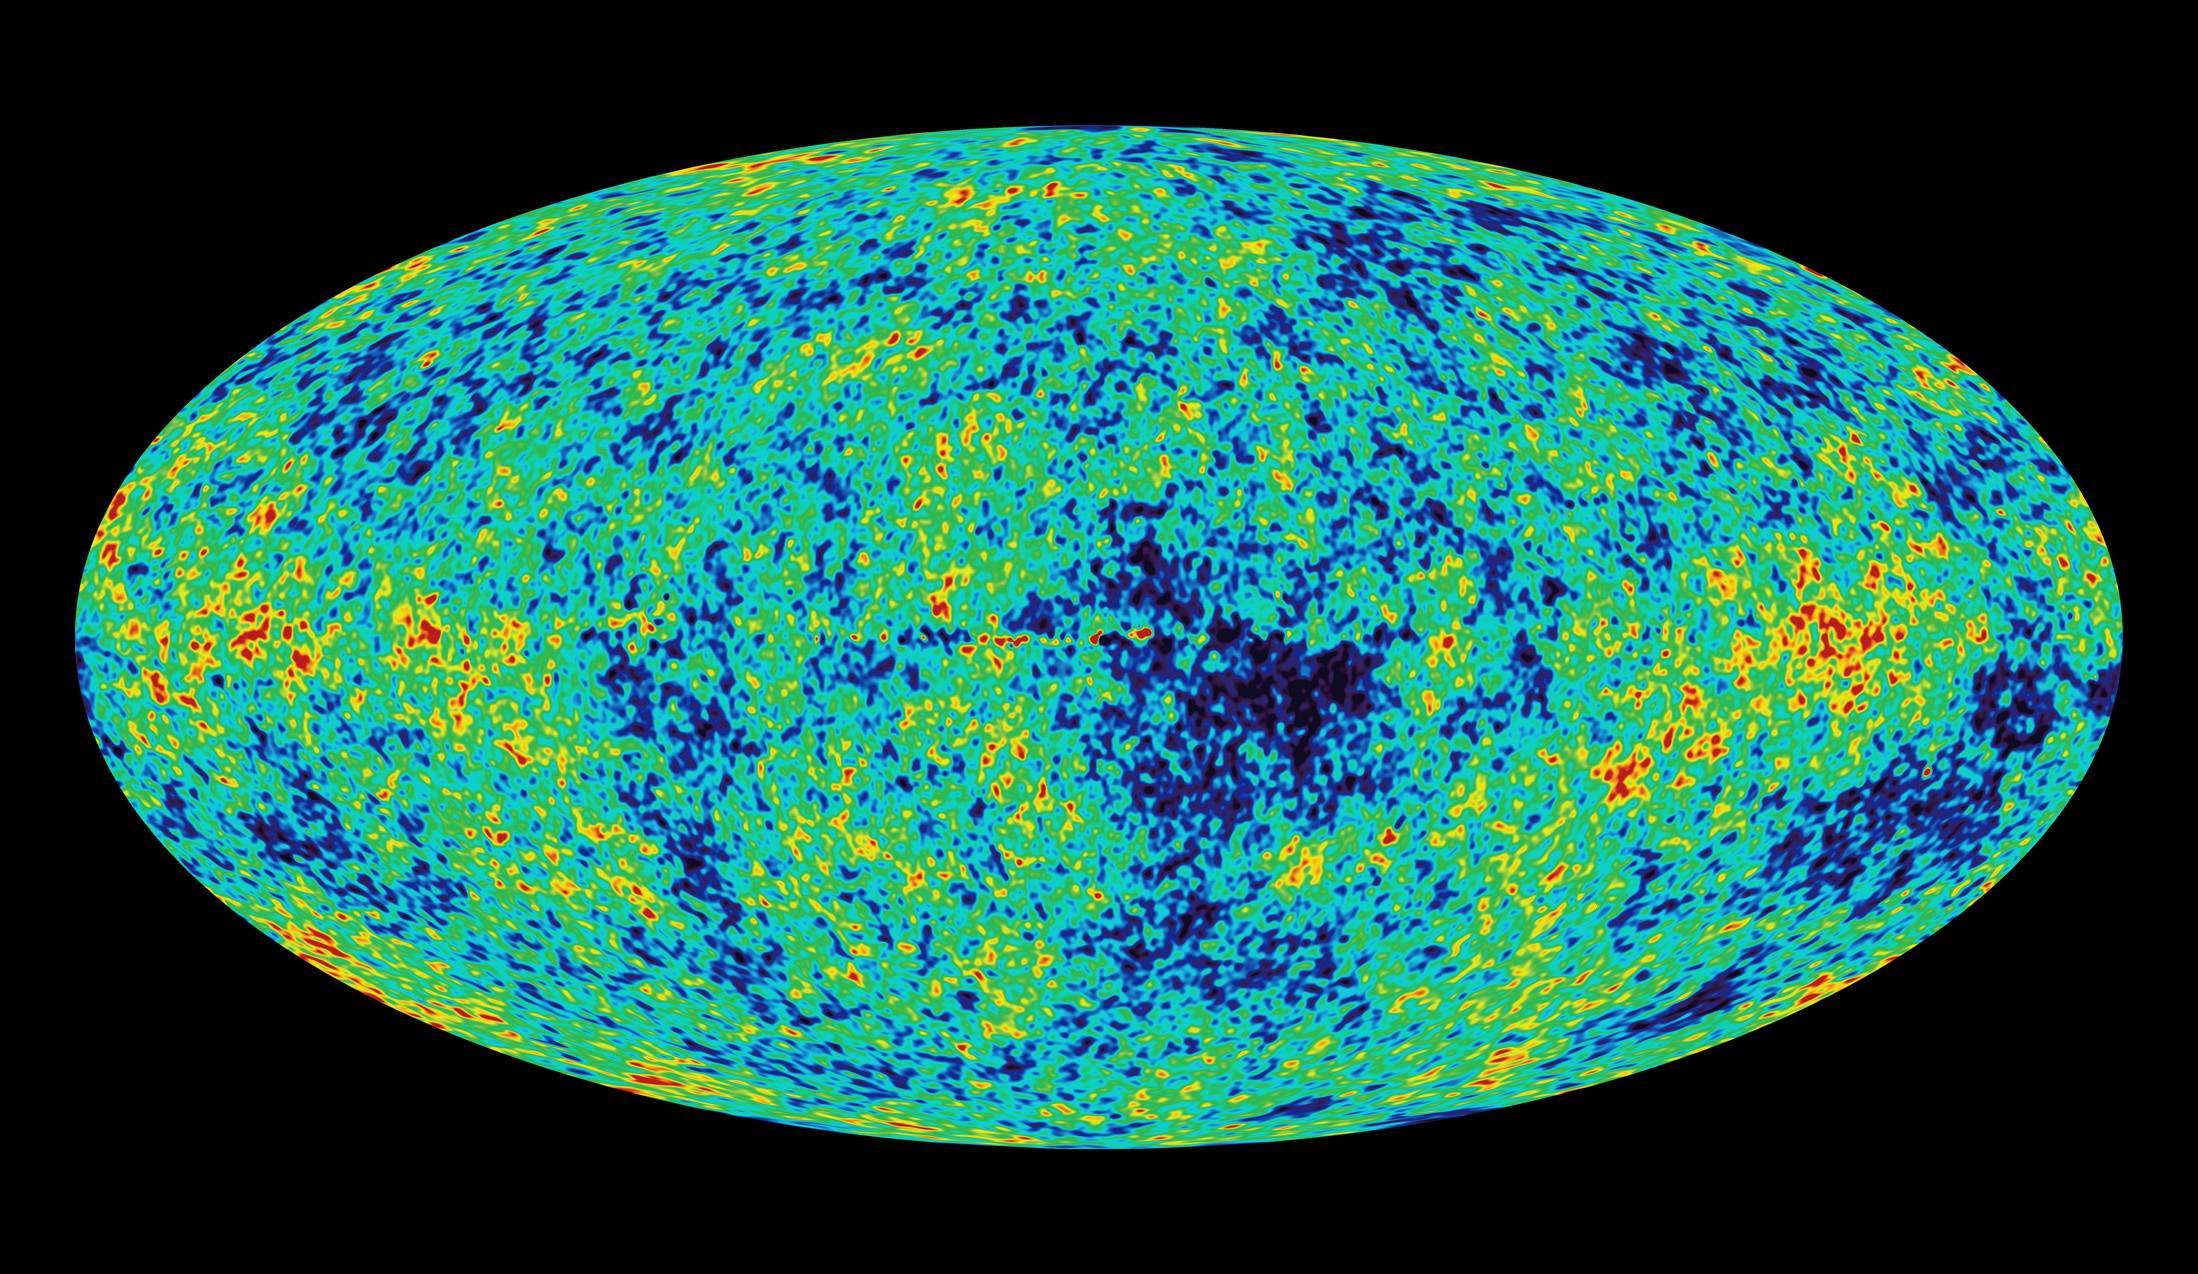 La radiación de fondo de microondas se observa en todo el universo –invisible a la vista humana, solo puede ser detectado por medio de instrumentos-  representa la primera radiación de la gran explosión que puede ser detectada. Es el antiguo eco de un universo caliente cuando el cosmos apenas tenía 400,000 años de edad. Imagen de la NASA.